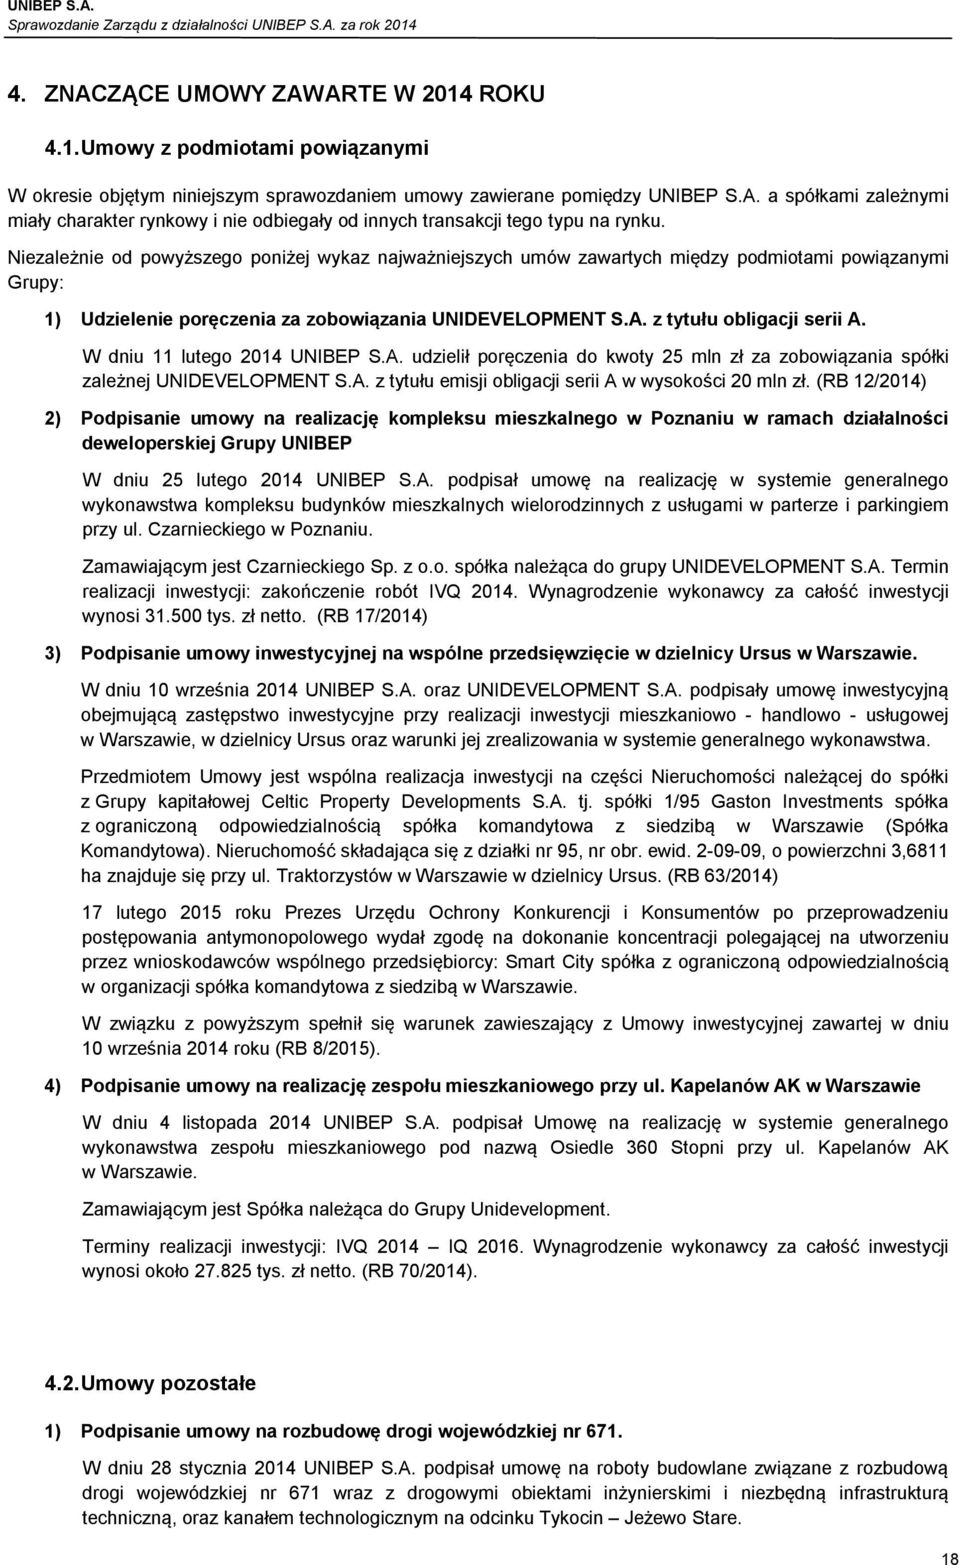 W dniu 11 lutego 2014 UNIBEP S.A. udzielił poręczenia do kwoty 25 mln zł za zobowiązania spółki zależnej UNIDEVELOPMENT S.A. z tytułu emisji obligacji serii A w wysokości 20 mln zł.